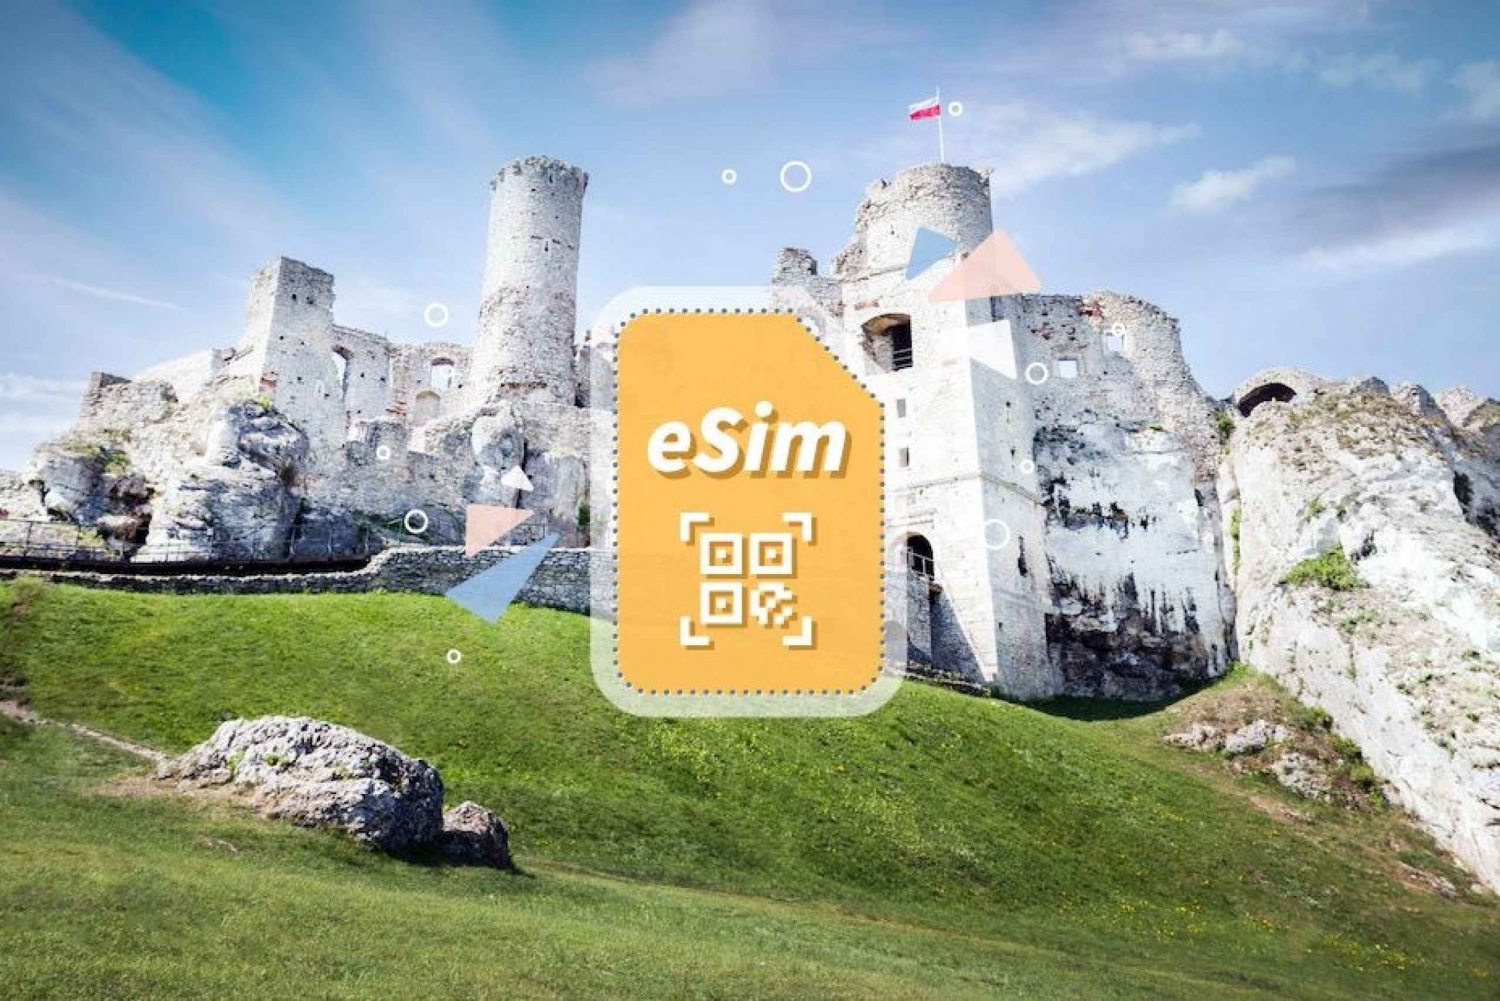 Puola/Eurooppa: 5G eSim -mobiilidatapaketti